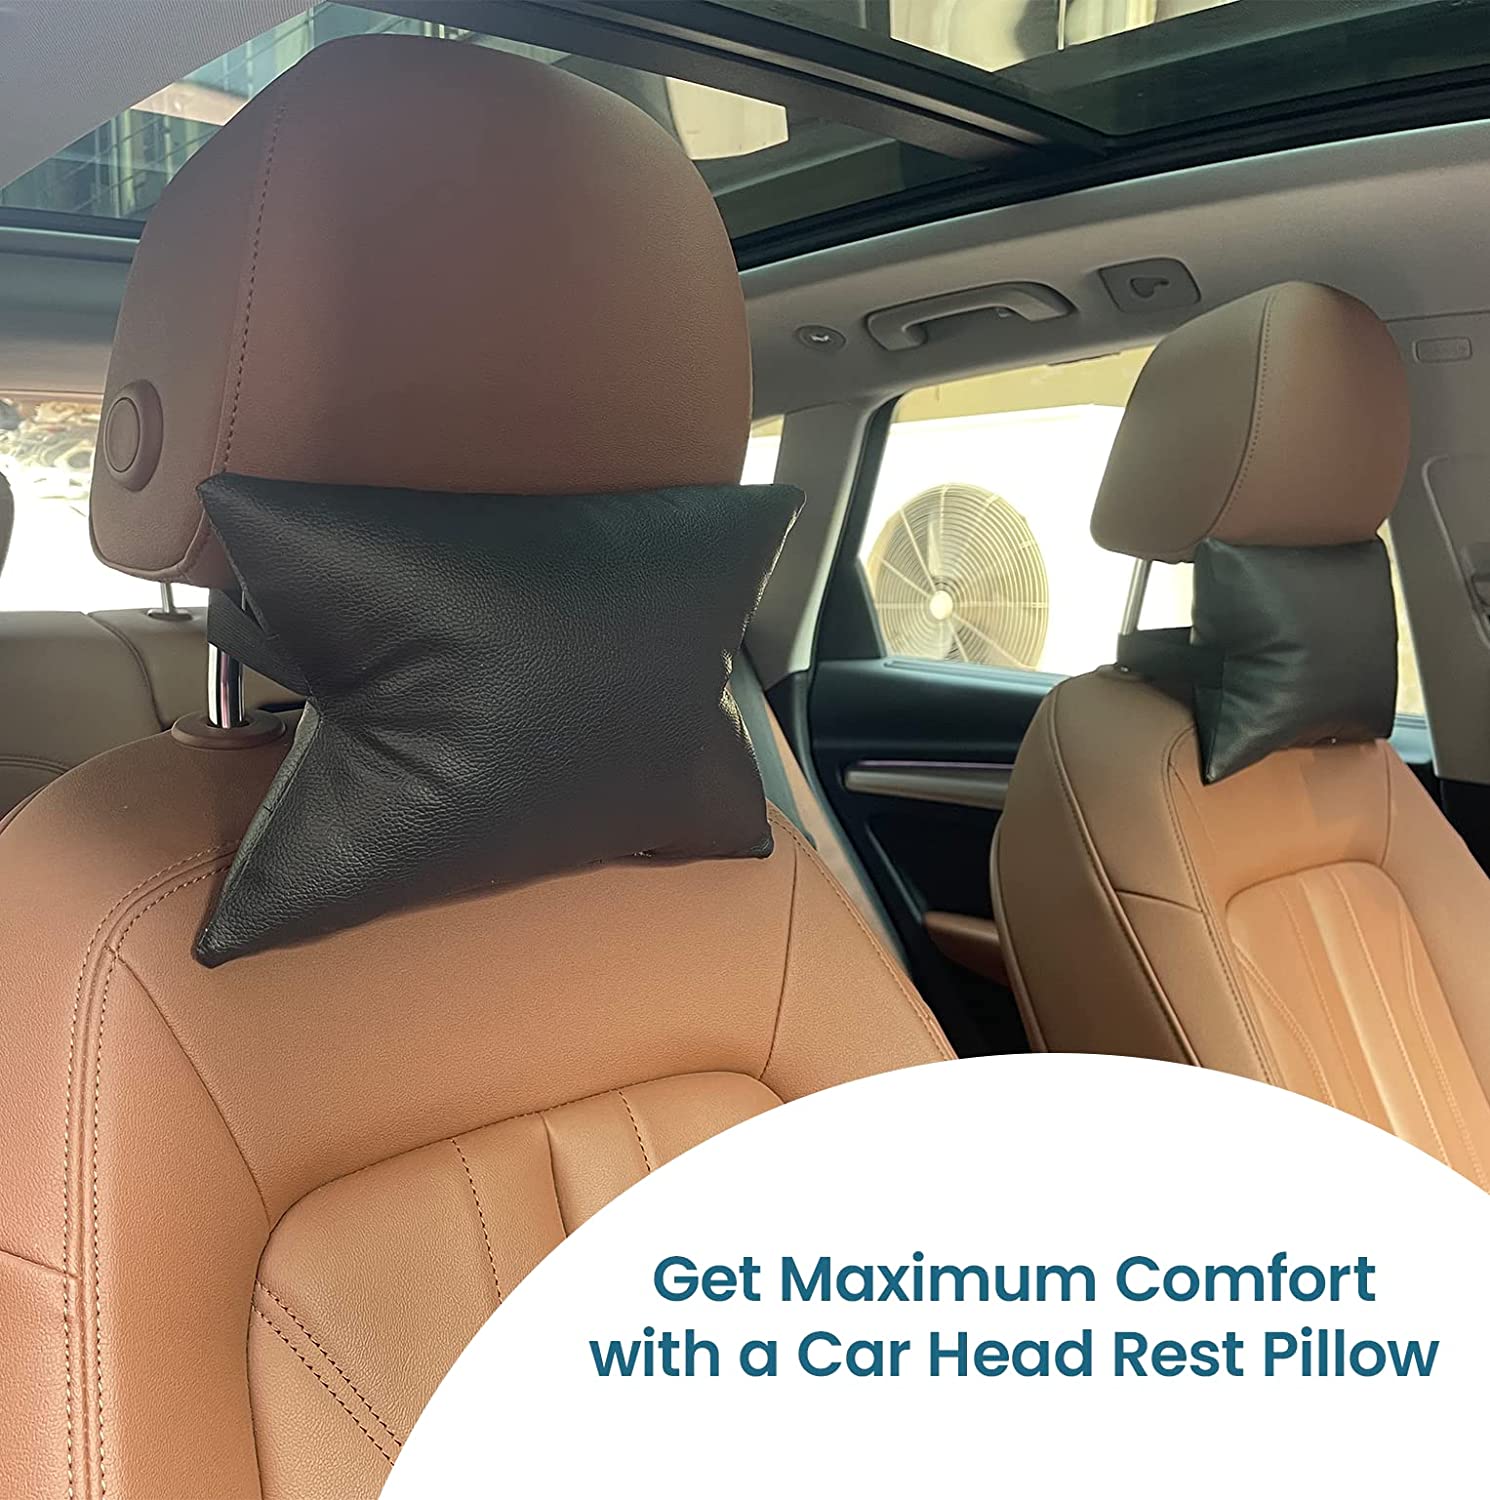 Car Headrest Pillow, Car Seat Pillow